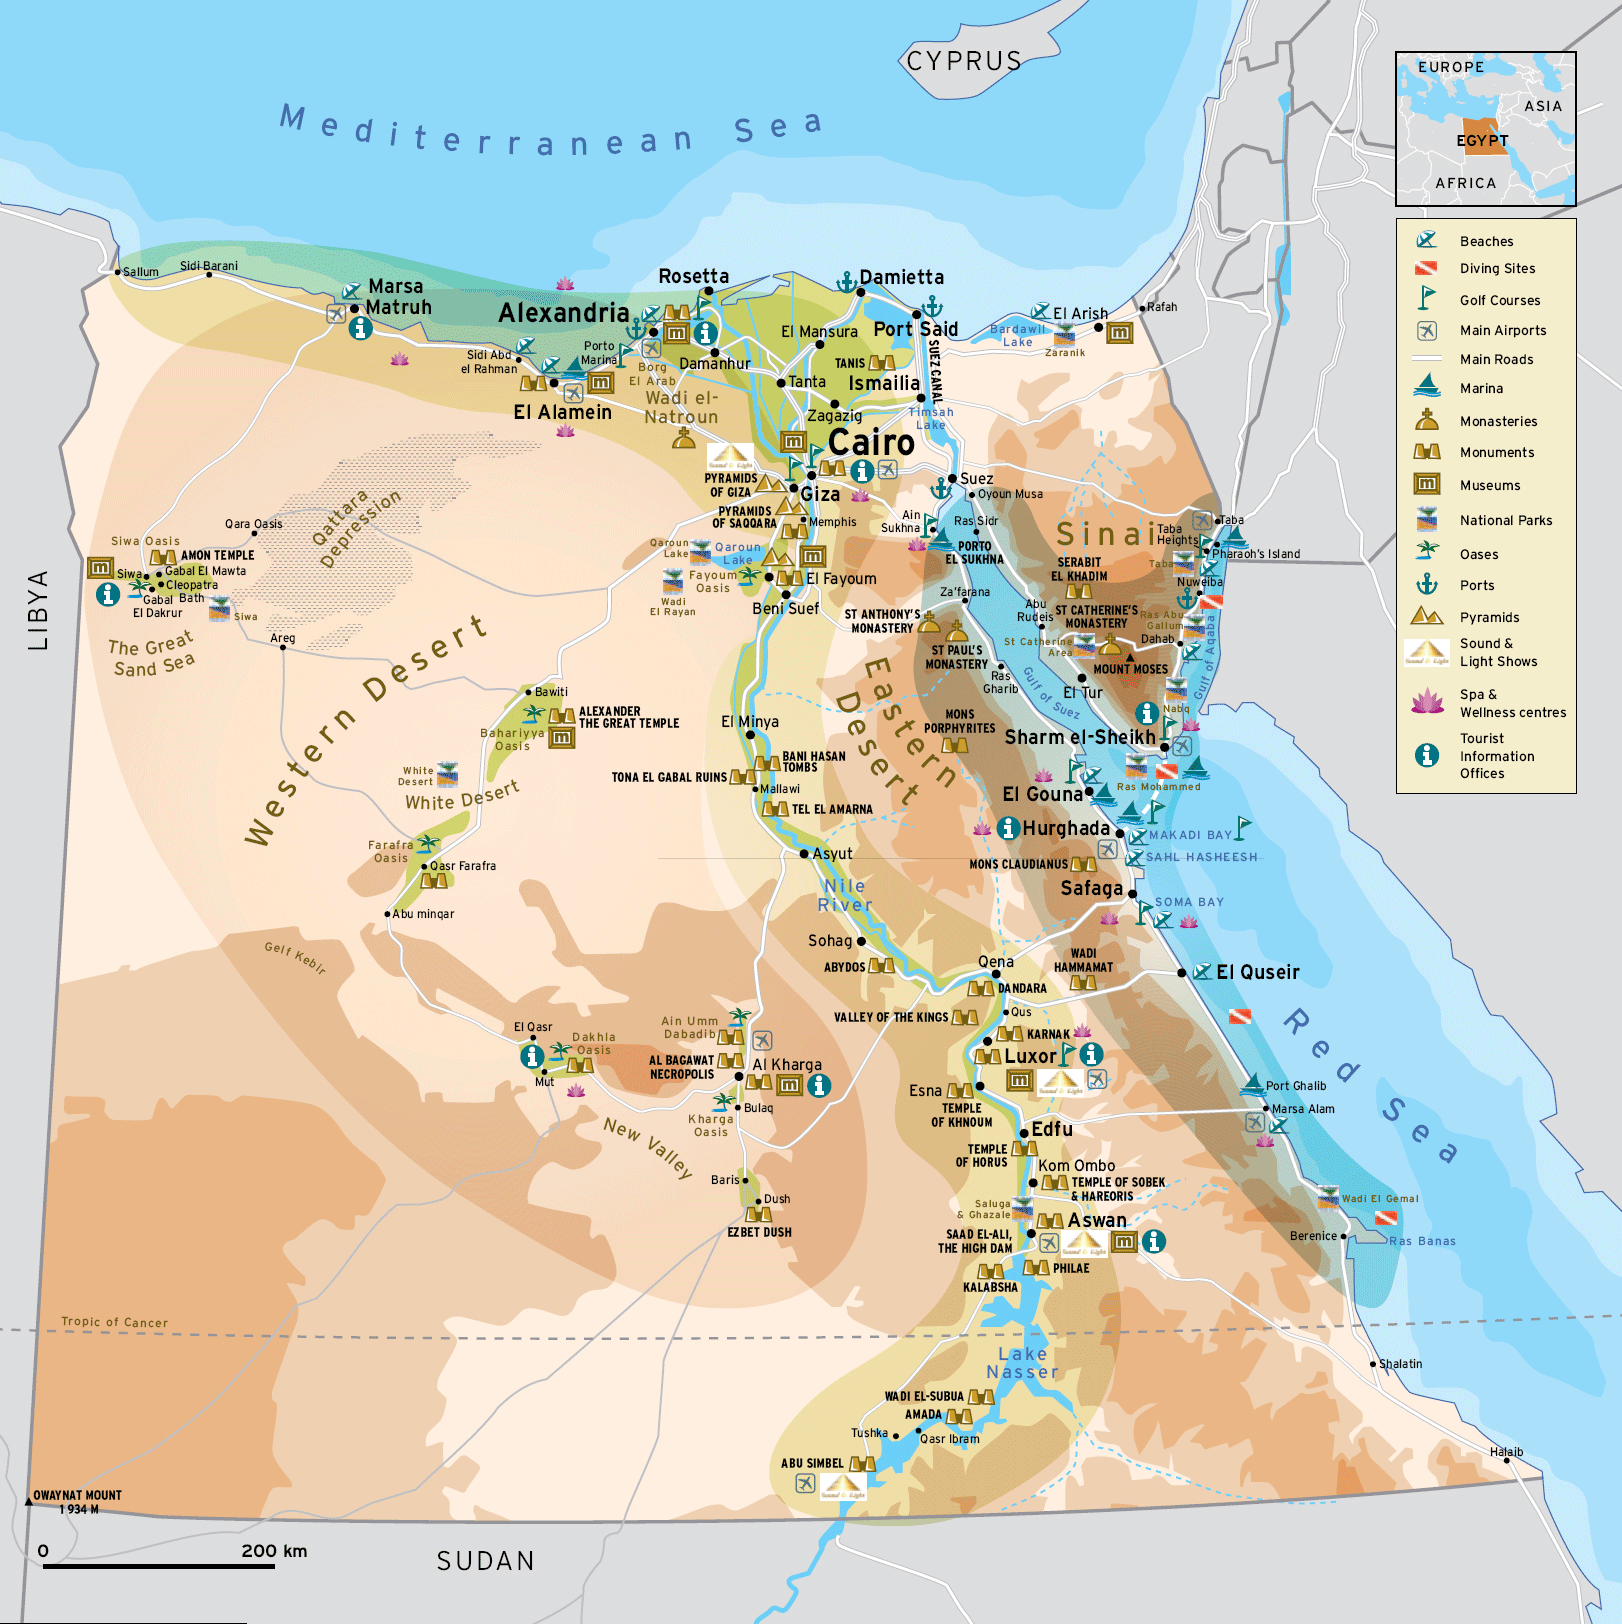 Nếu bạn là người yêu thích du lịch và mong muốn khám phá vẻ đẹp của Ai Cập, bản đồ du lịch Ai Cập là sự lựa chọn lý tưởng. Hãy tìm hiểu và chuẩn bị cho chuyến hành trình sắp tới của bạn với bản đồ đầy đủ thông tin về các địa điểm nổi tiếng và gợi ý những điểm đến mới.